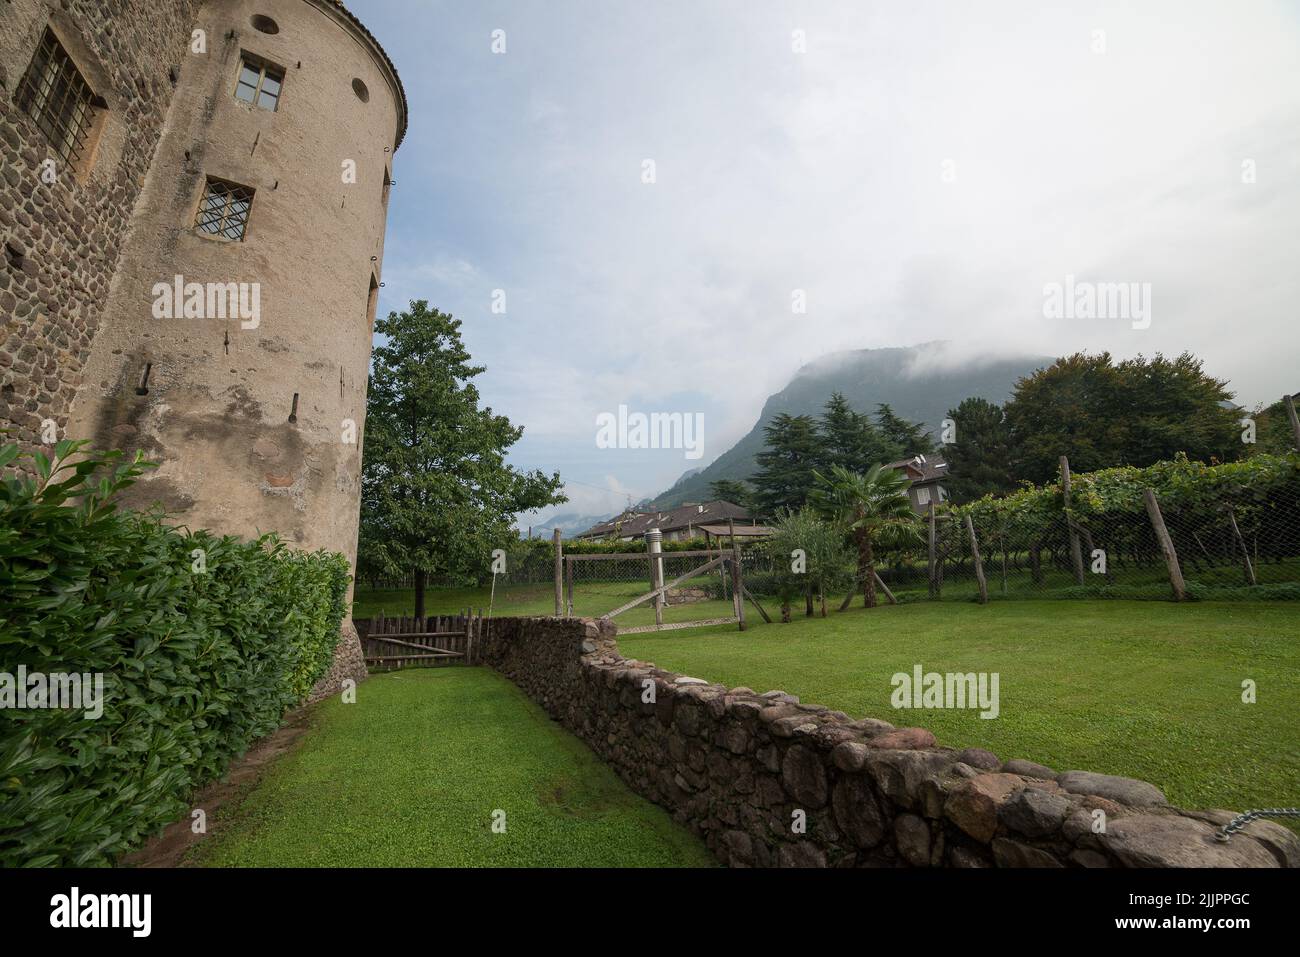 Ein schöner Hinterhof eines historischen Steingebäudes mit einem nebligen Berg im Hintergrund Stockfoto